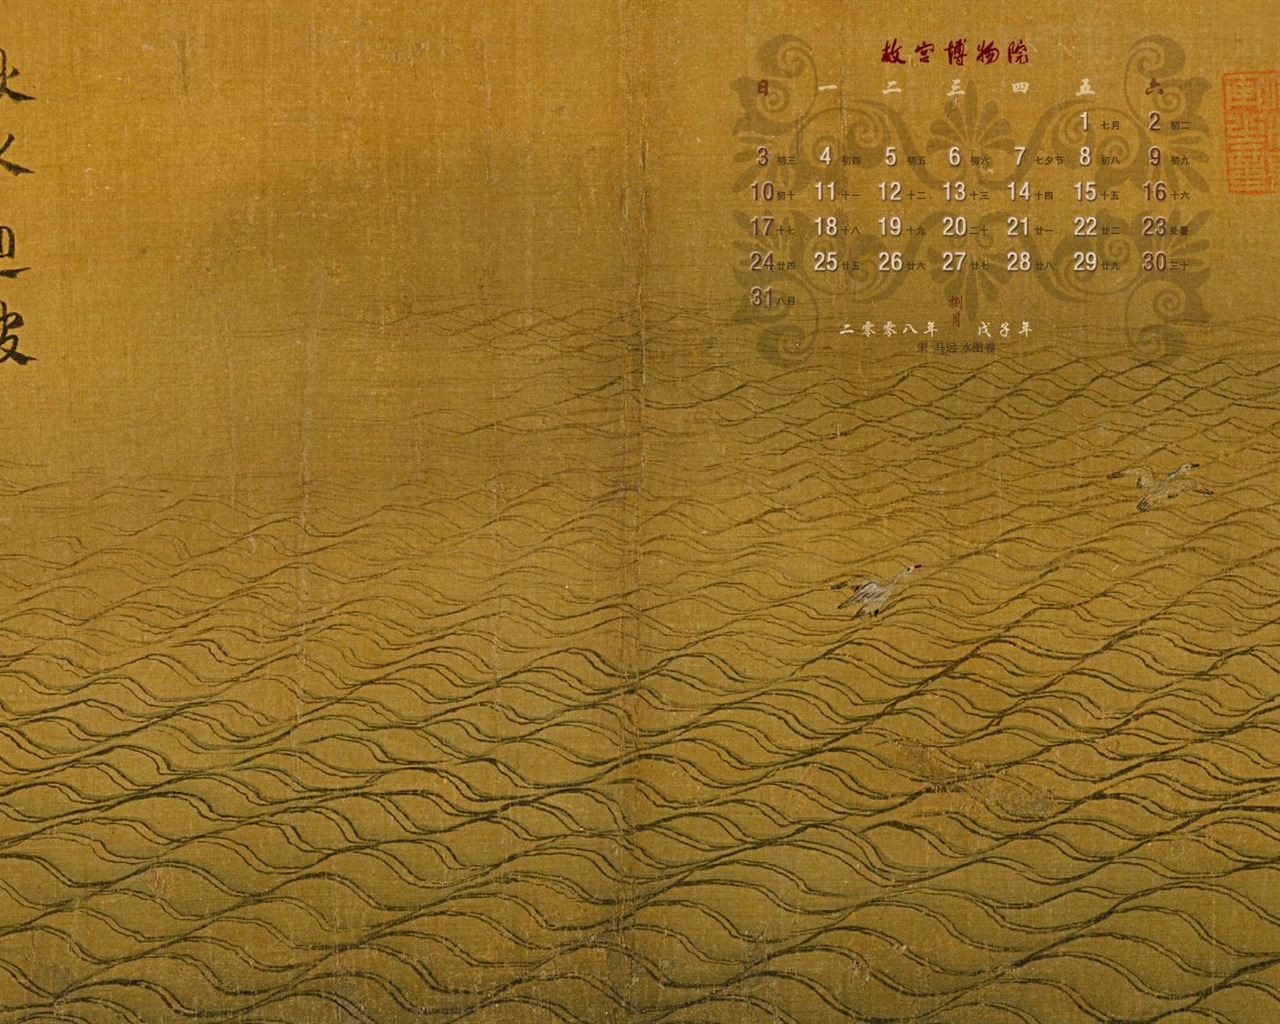 北京故宫博物院 文物展壁纸(二)11 - 1280x1024